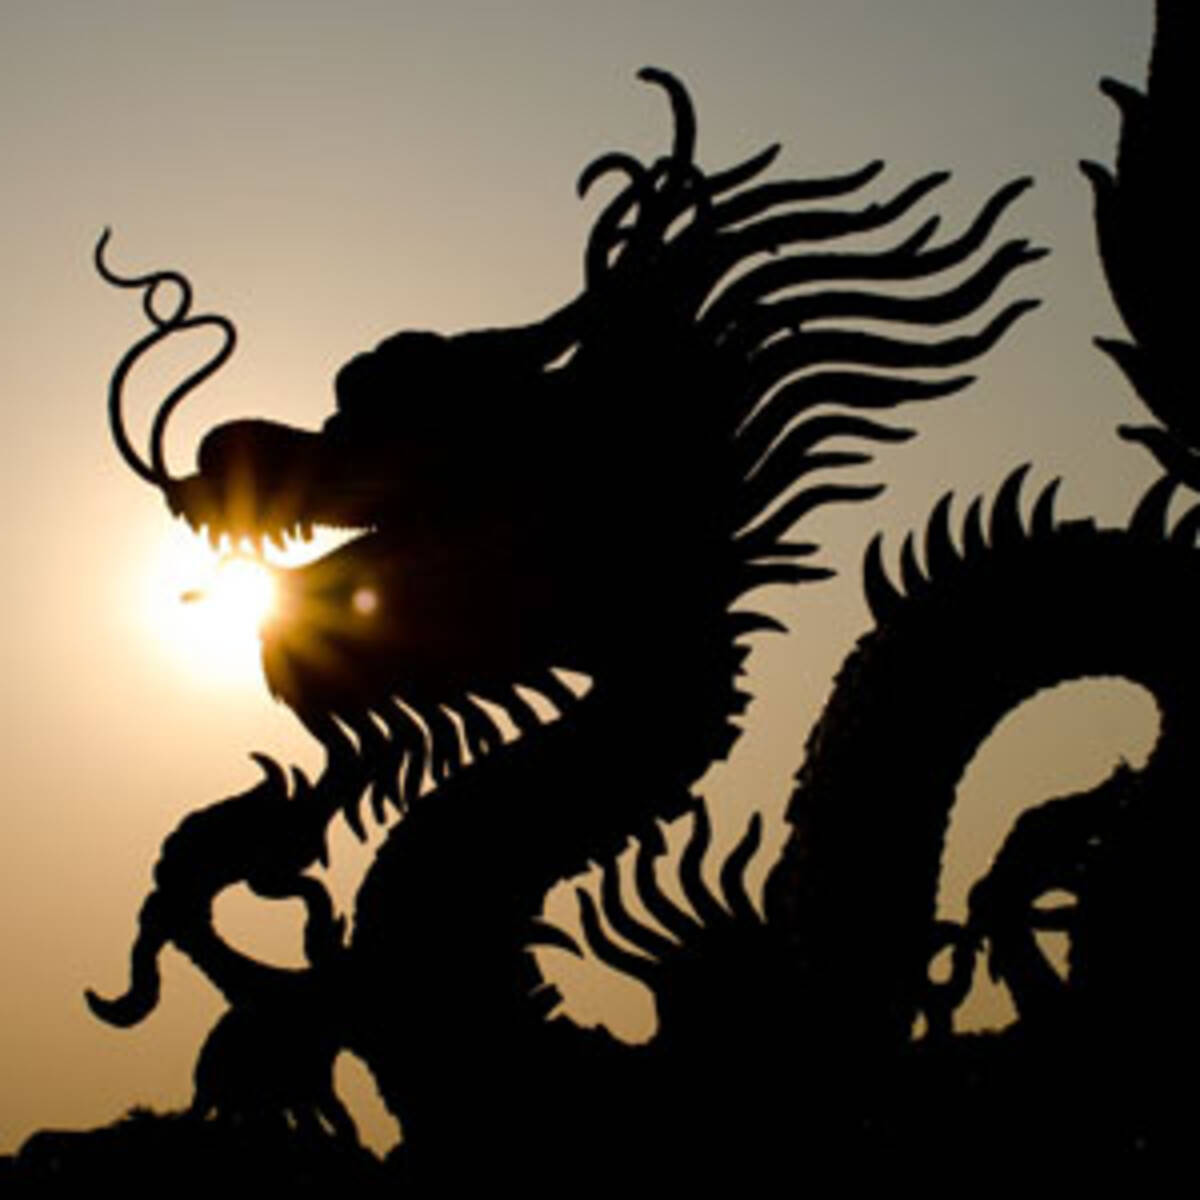 日本の中心に横たわる 龍が昇る 場所 そこは神秘的な絶景の宝庫だった 中国メディア 17年9月30日 エキサイトニュース